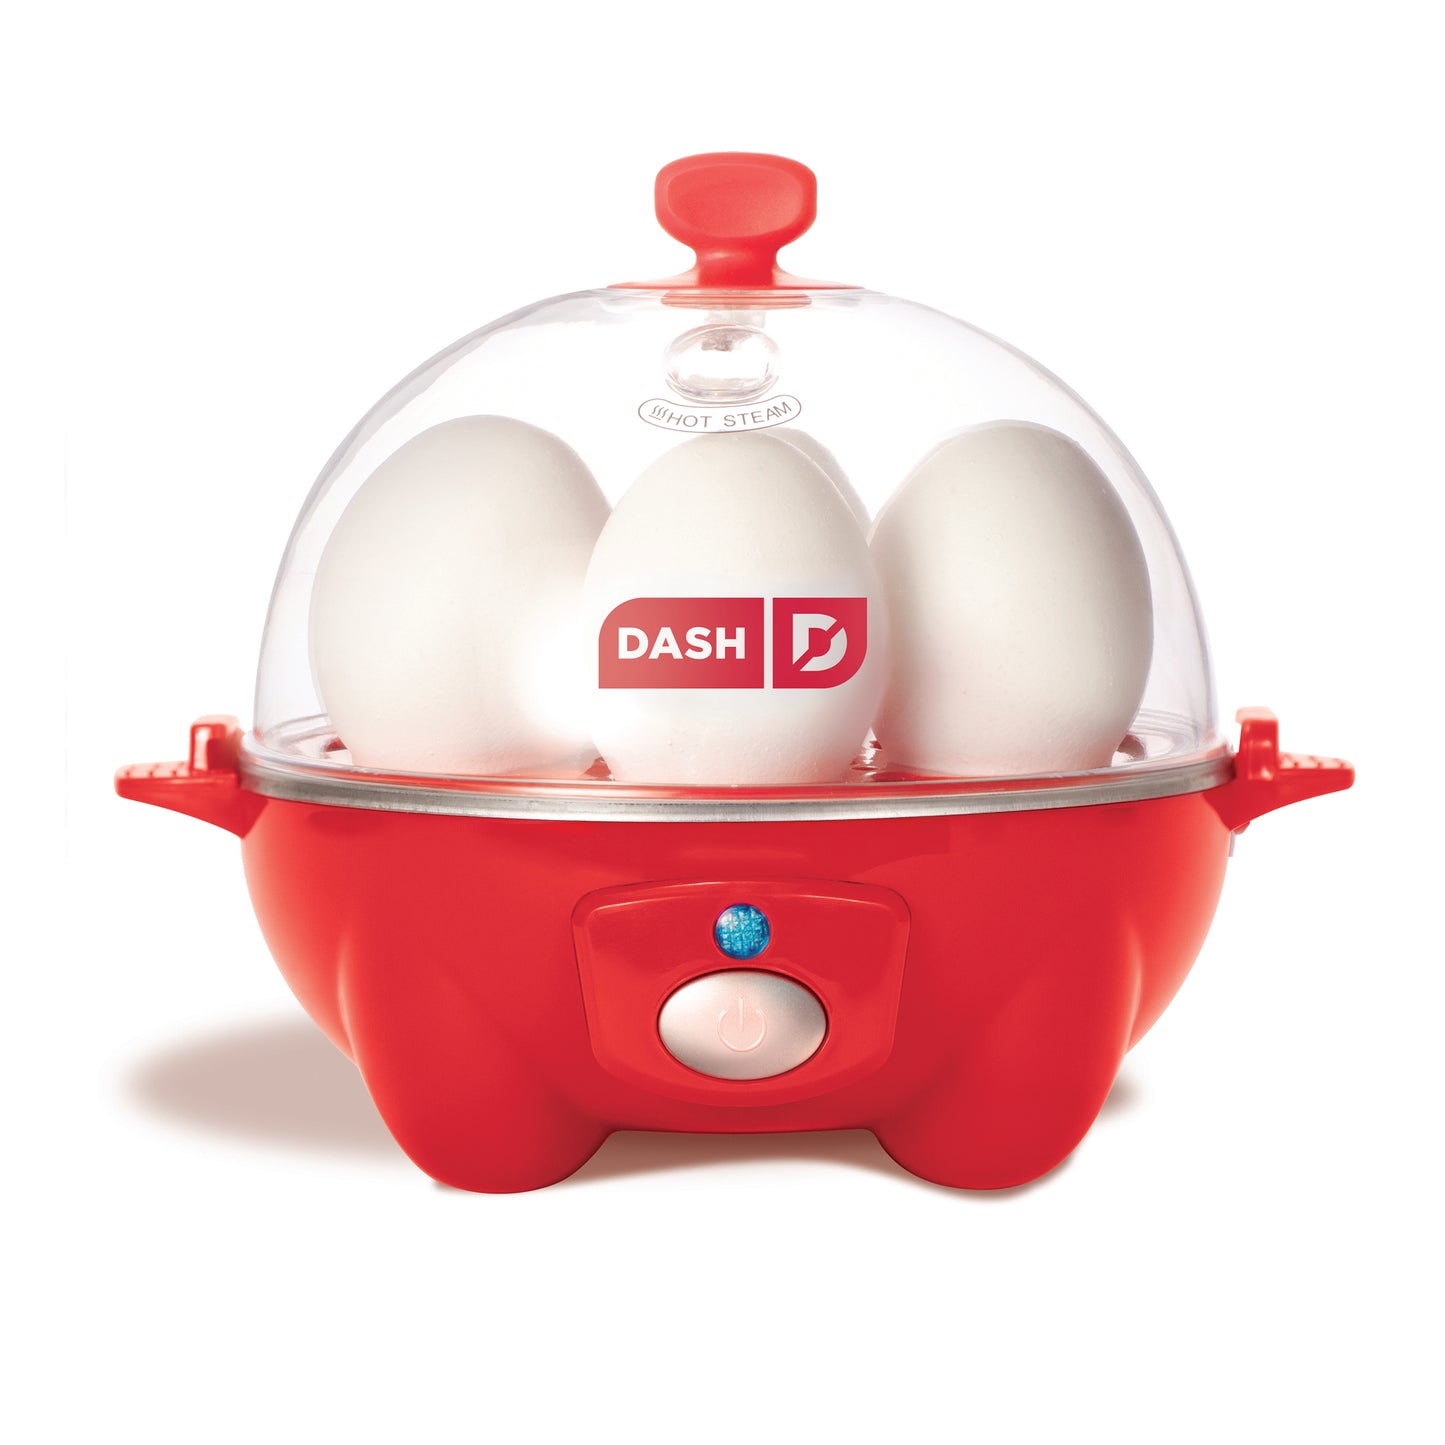 Dash® Express Egg Cooker at Von Maur